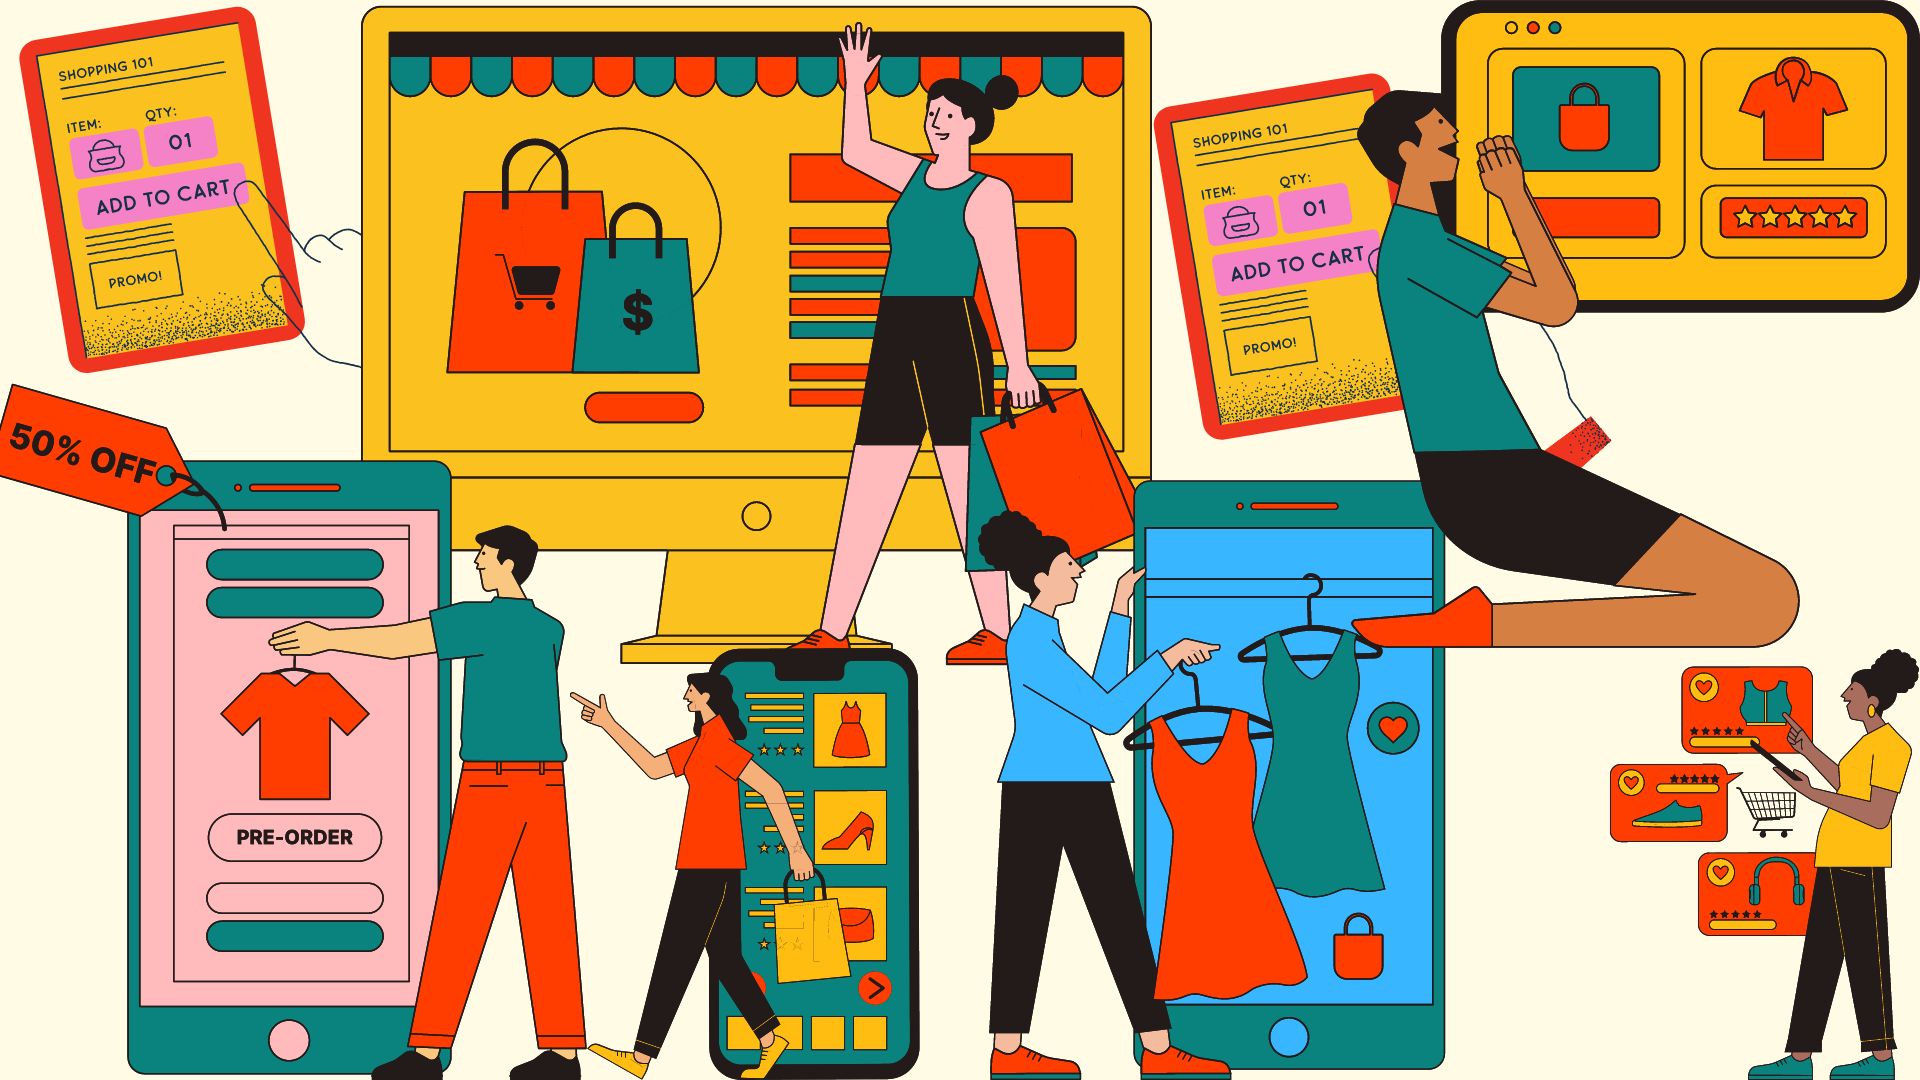 Quanti negozi si possono creare con Shopify?